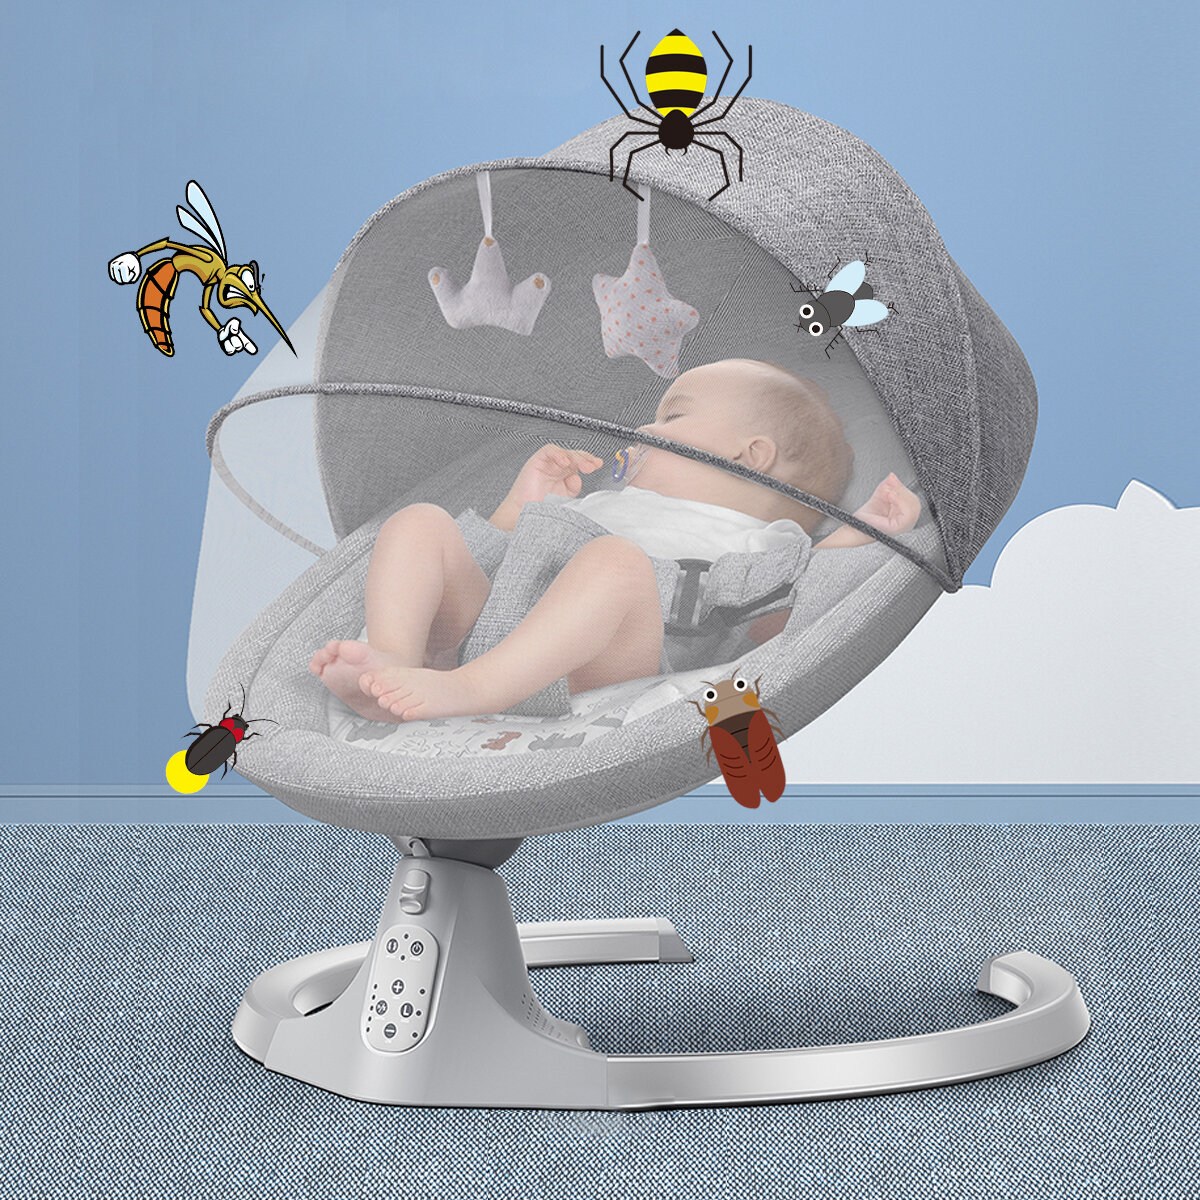 Wipstoeltje, elektrische babyschommel met muziek, bruikbaar vanaf de geboorte tot ca. 9 maanden, 0-18 kg laadvermogen, 5 snelheidsregelaars en 3 tijdsinstellingen